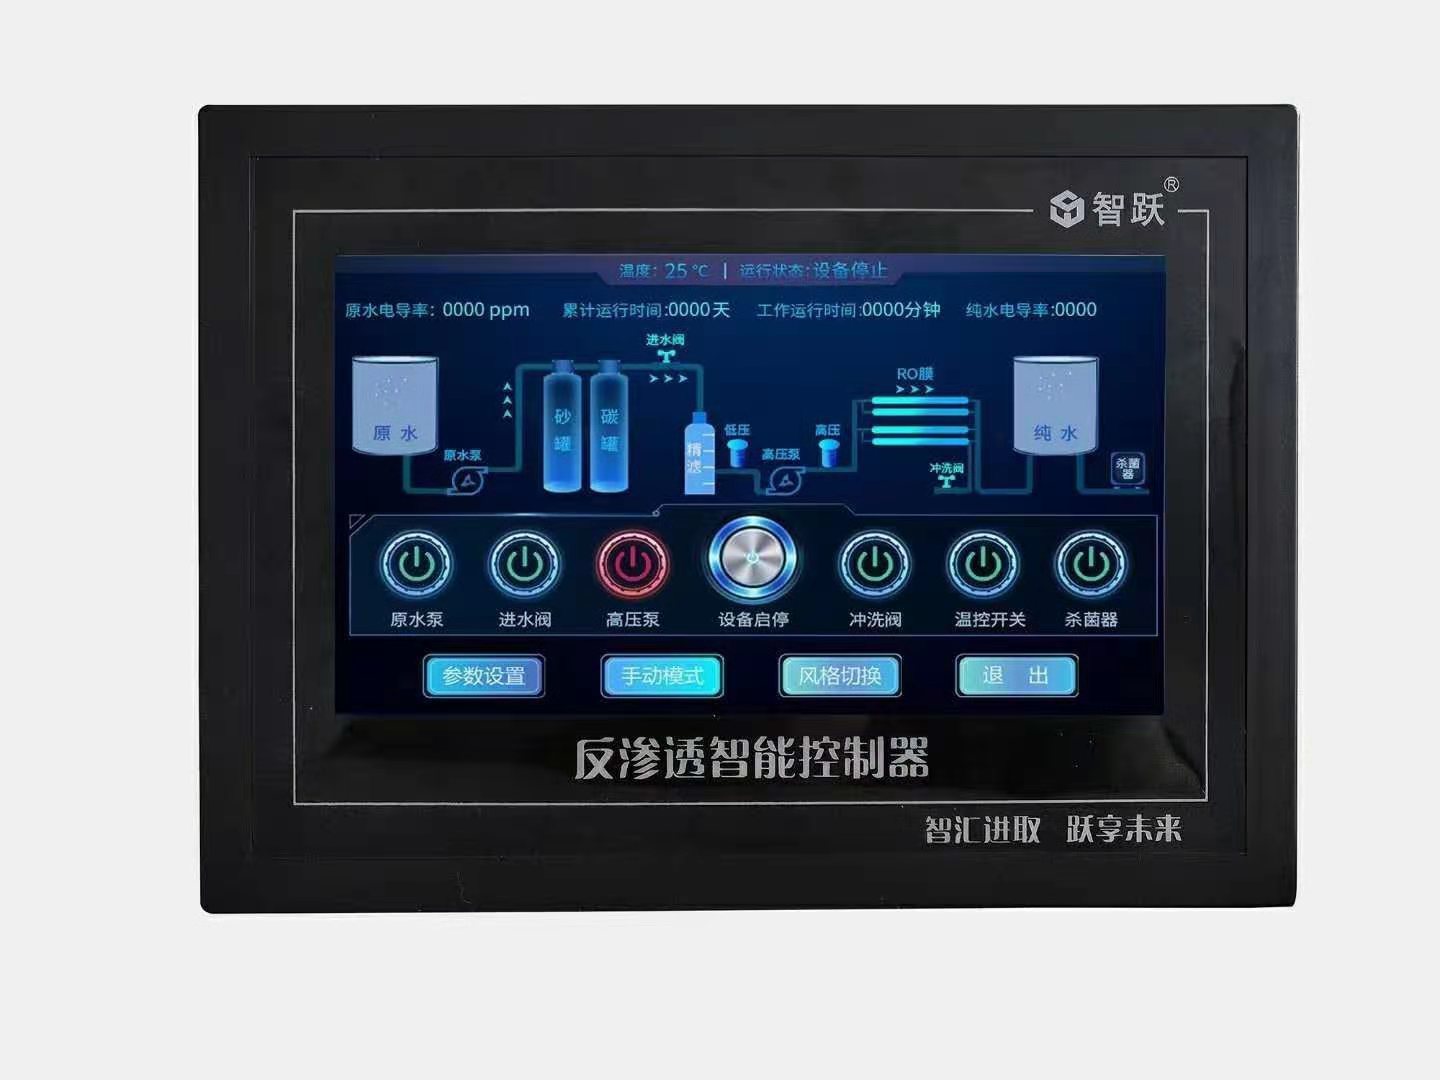 镇江智跃反渗透控制器7寸动态触摸屏工业机控制器接线简单安装方便参数